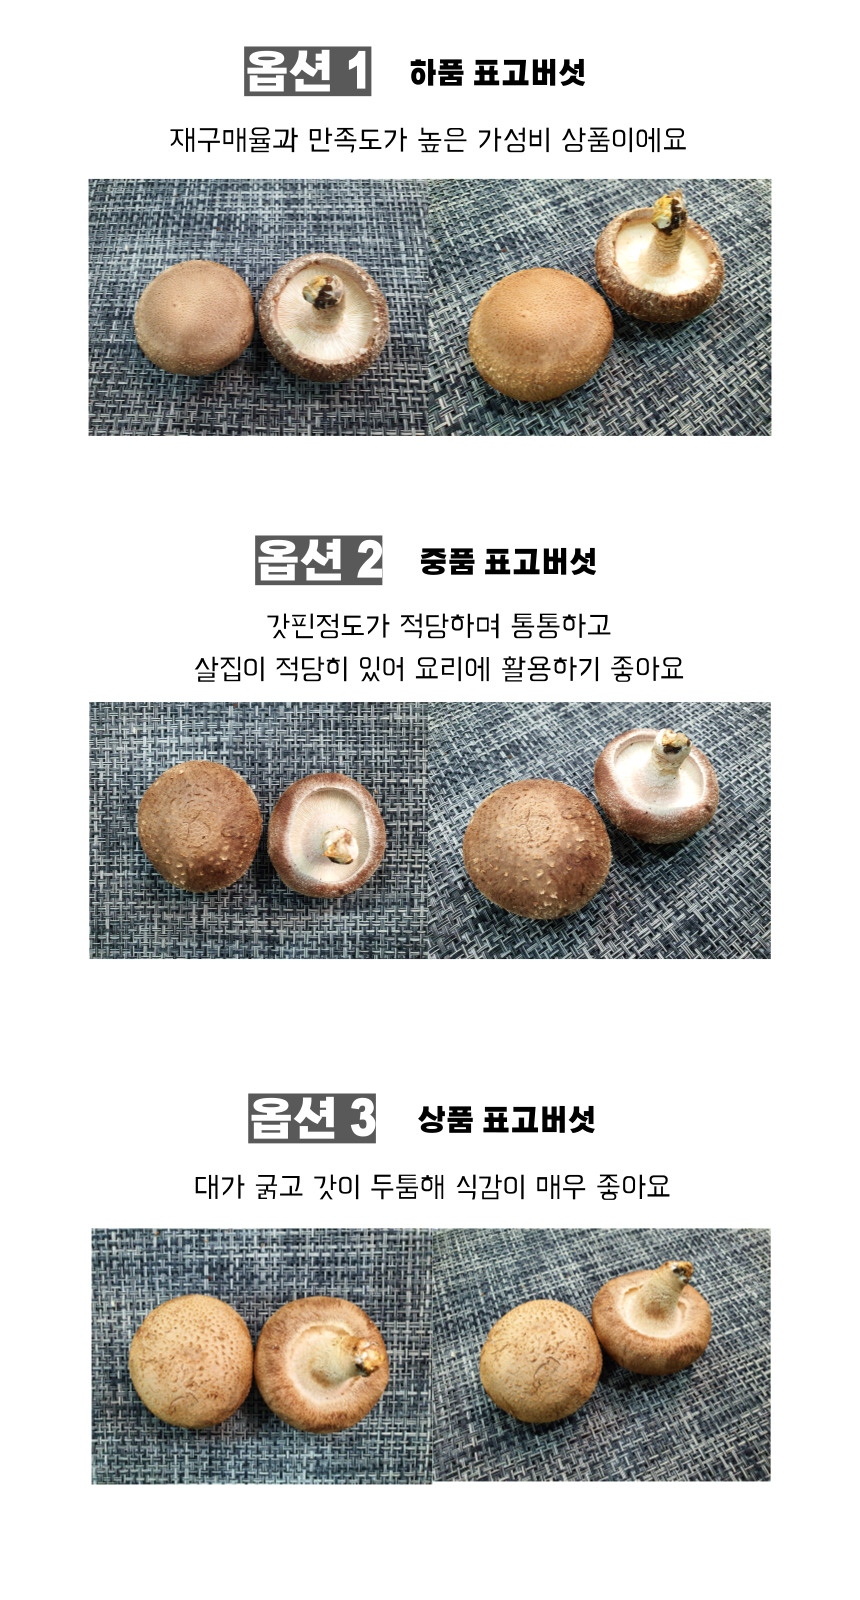 생표고버섯 상품 중품 하품 이미지 비교.jpg